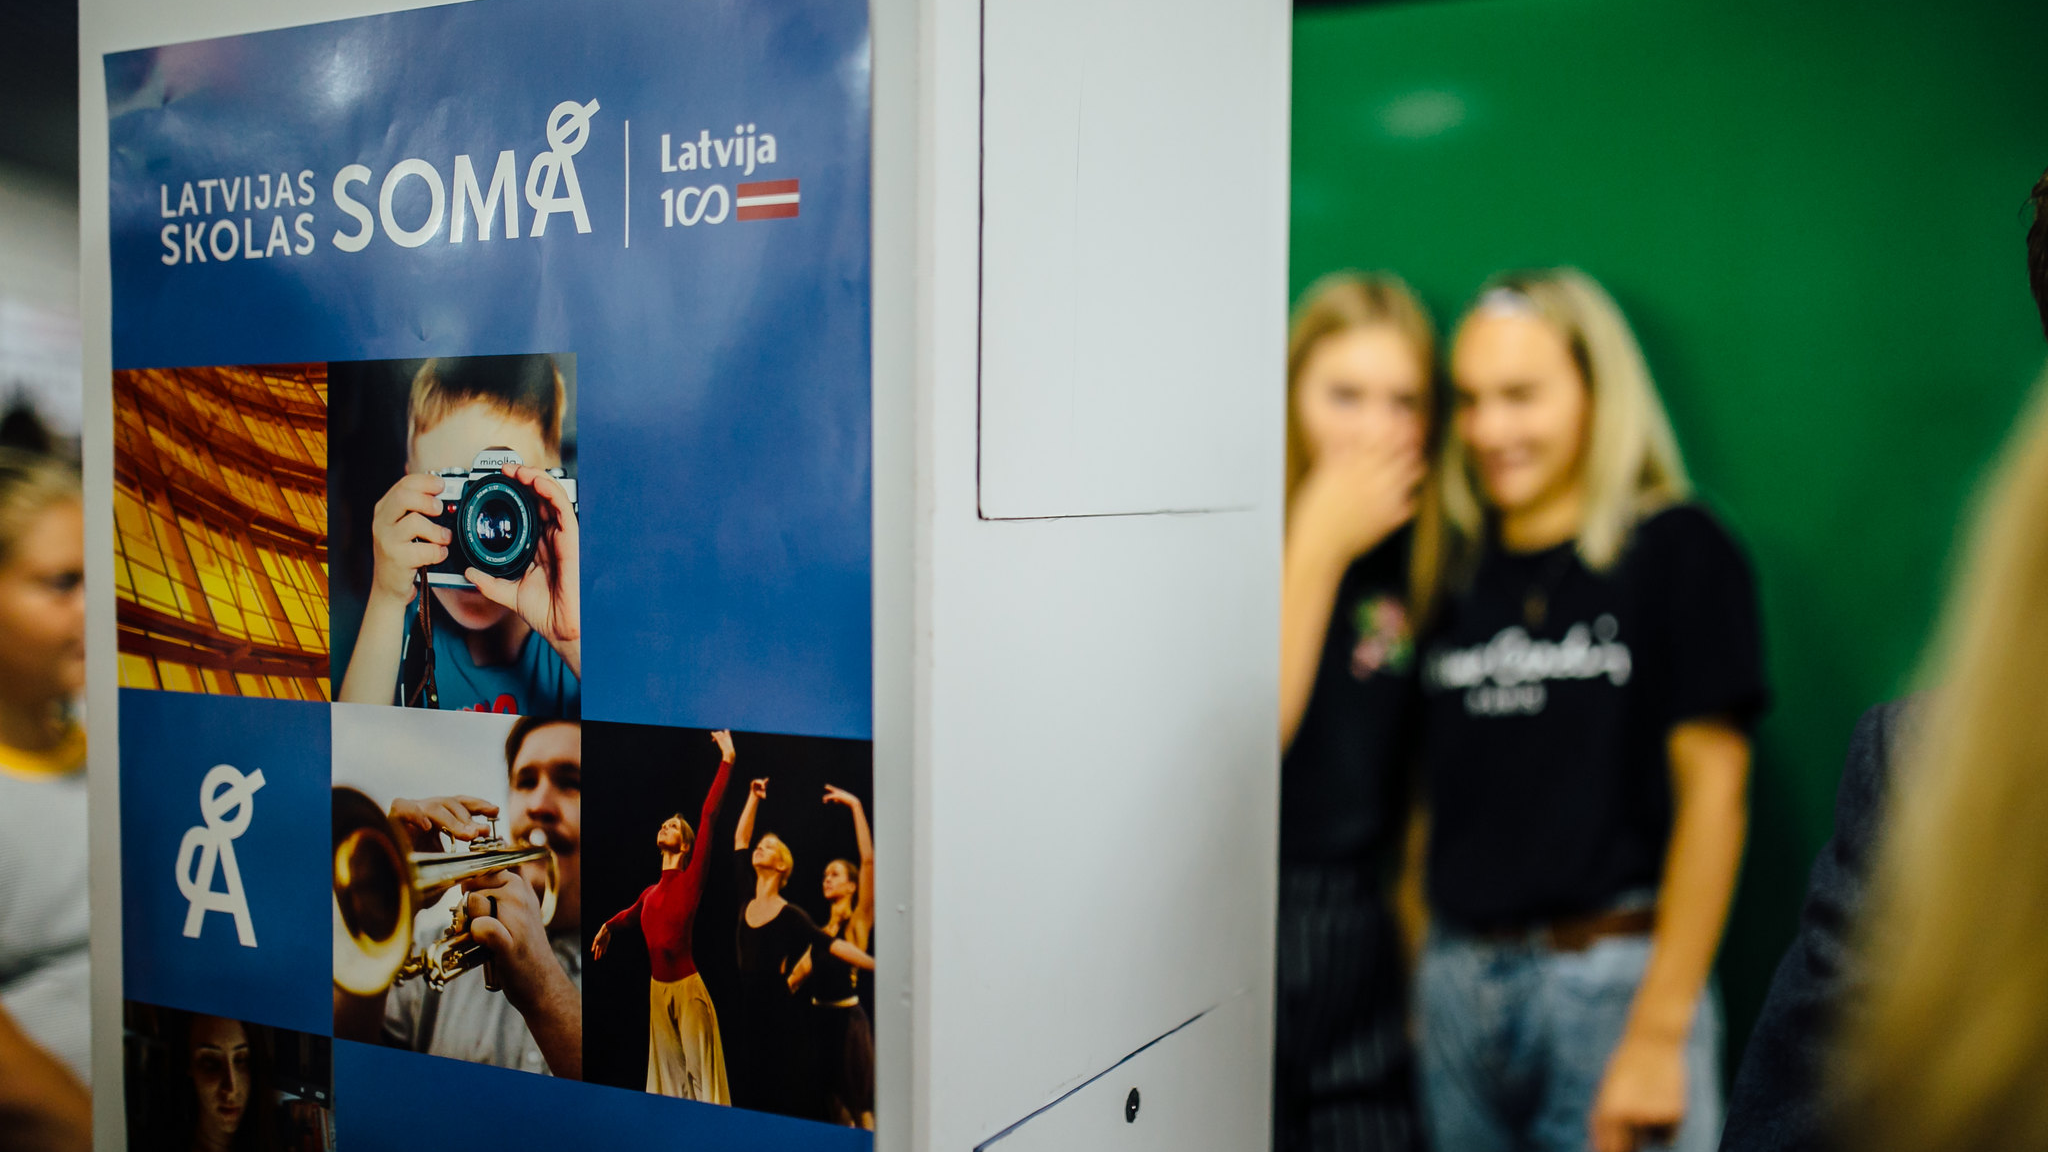 Programmā “Latvijas skolas soma” šobrīd mācību procesā aktīvi izmanto digitālās kultūras norises